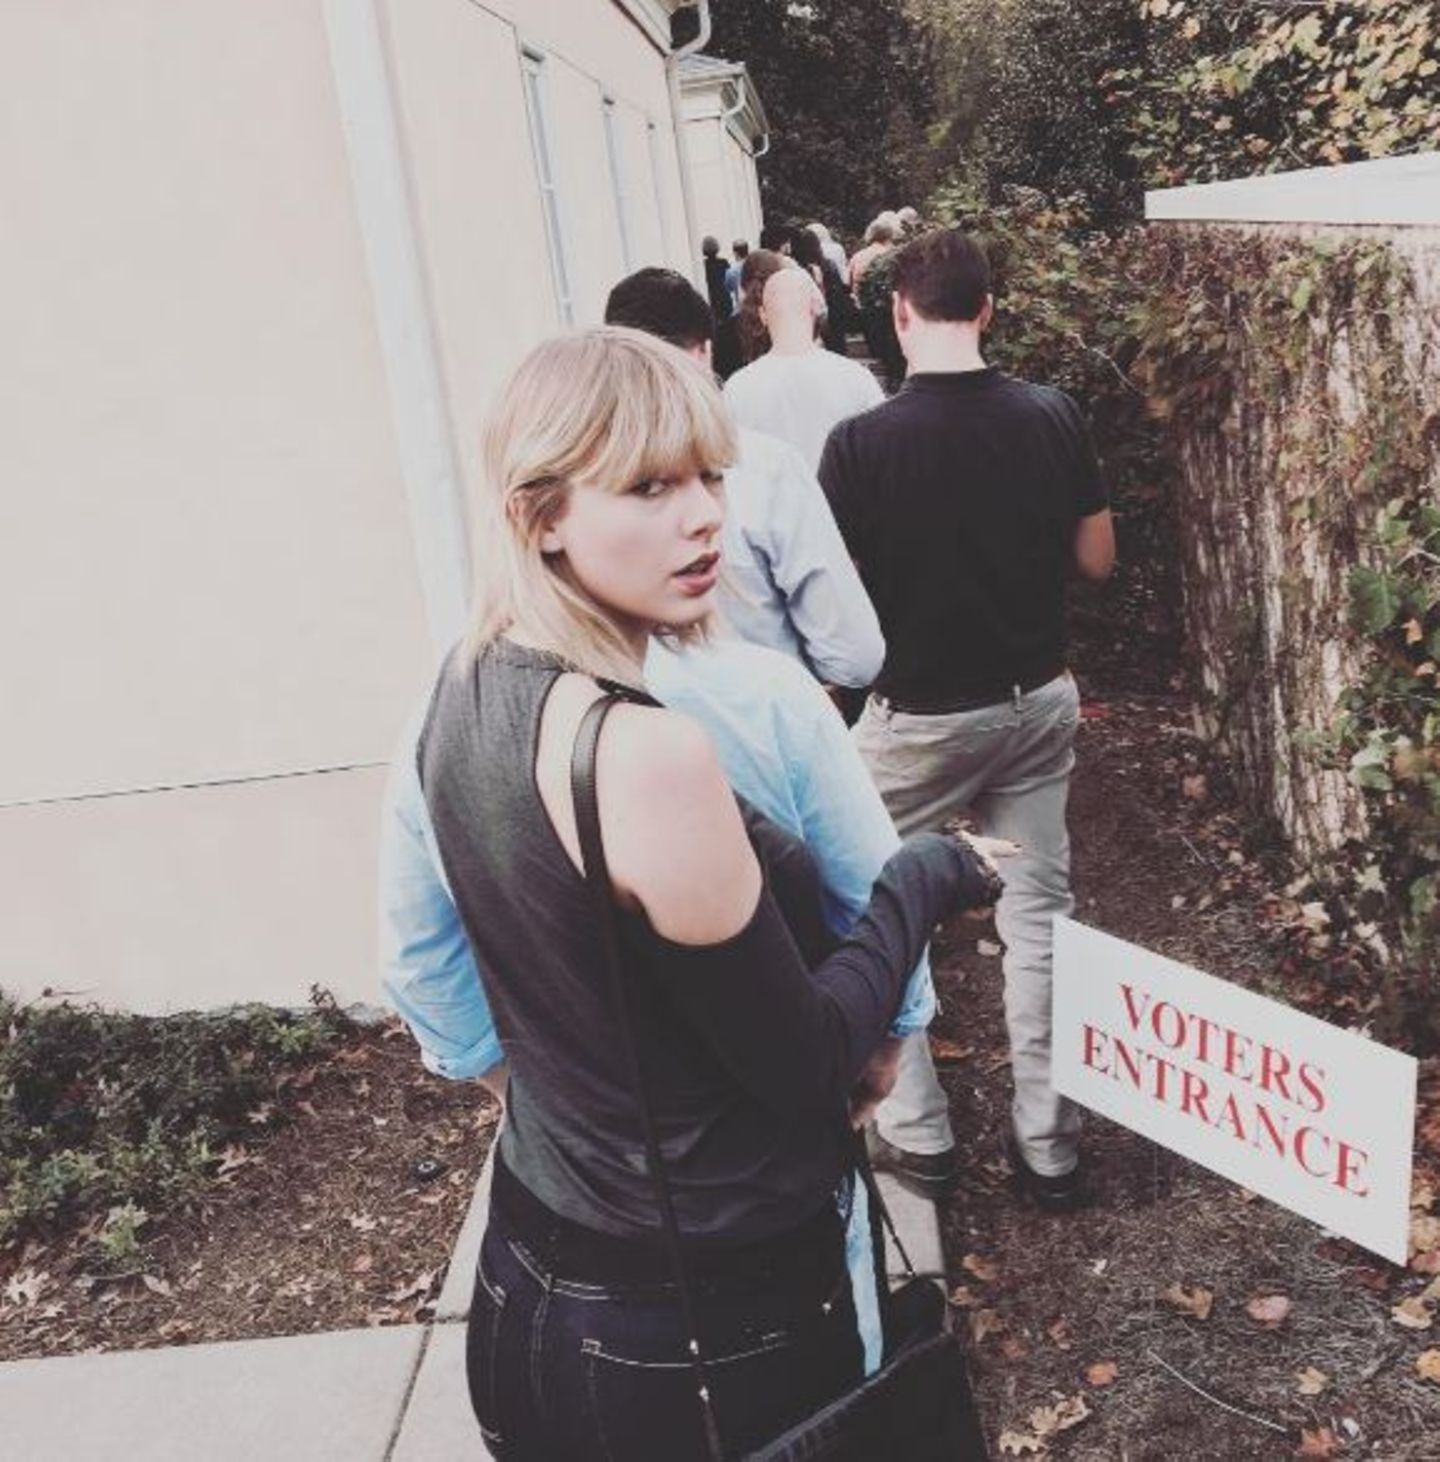 Auch Taylor Swift mahnt ihre Follower: "Heute ist der Tag. Geht raus und wählt." Die Sängerin hat sich schon in die Schlange zum Wahllokal eingereiht.